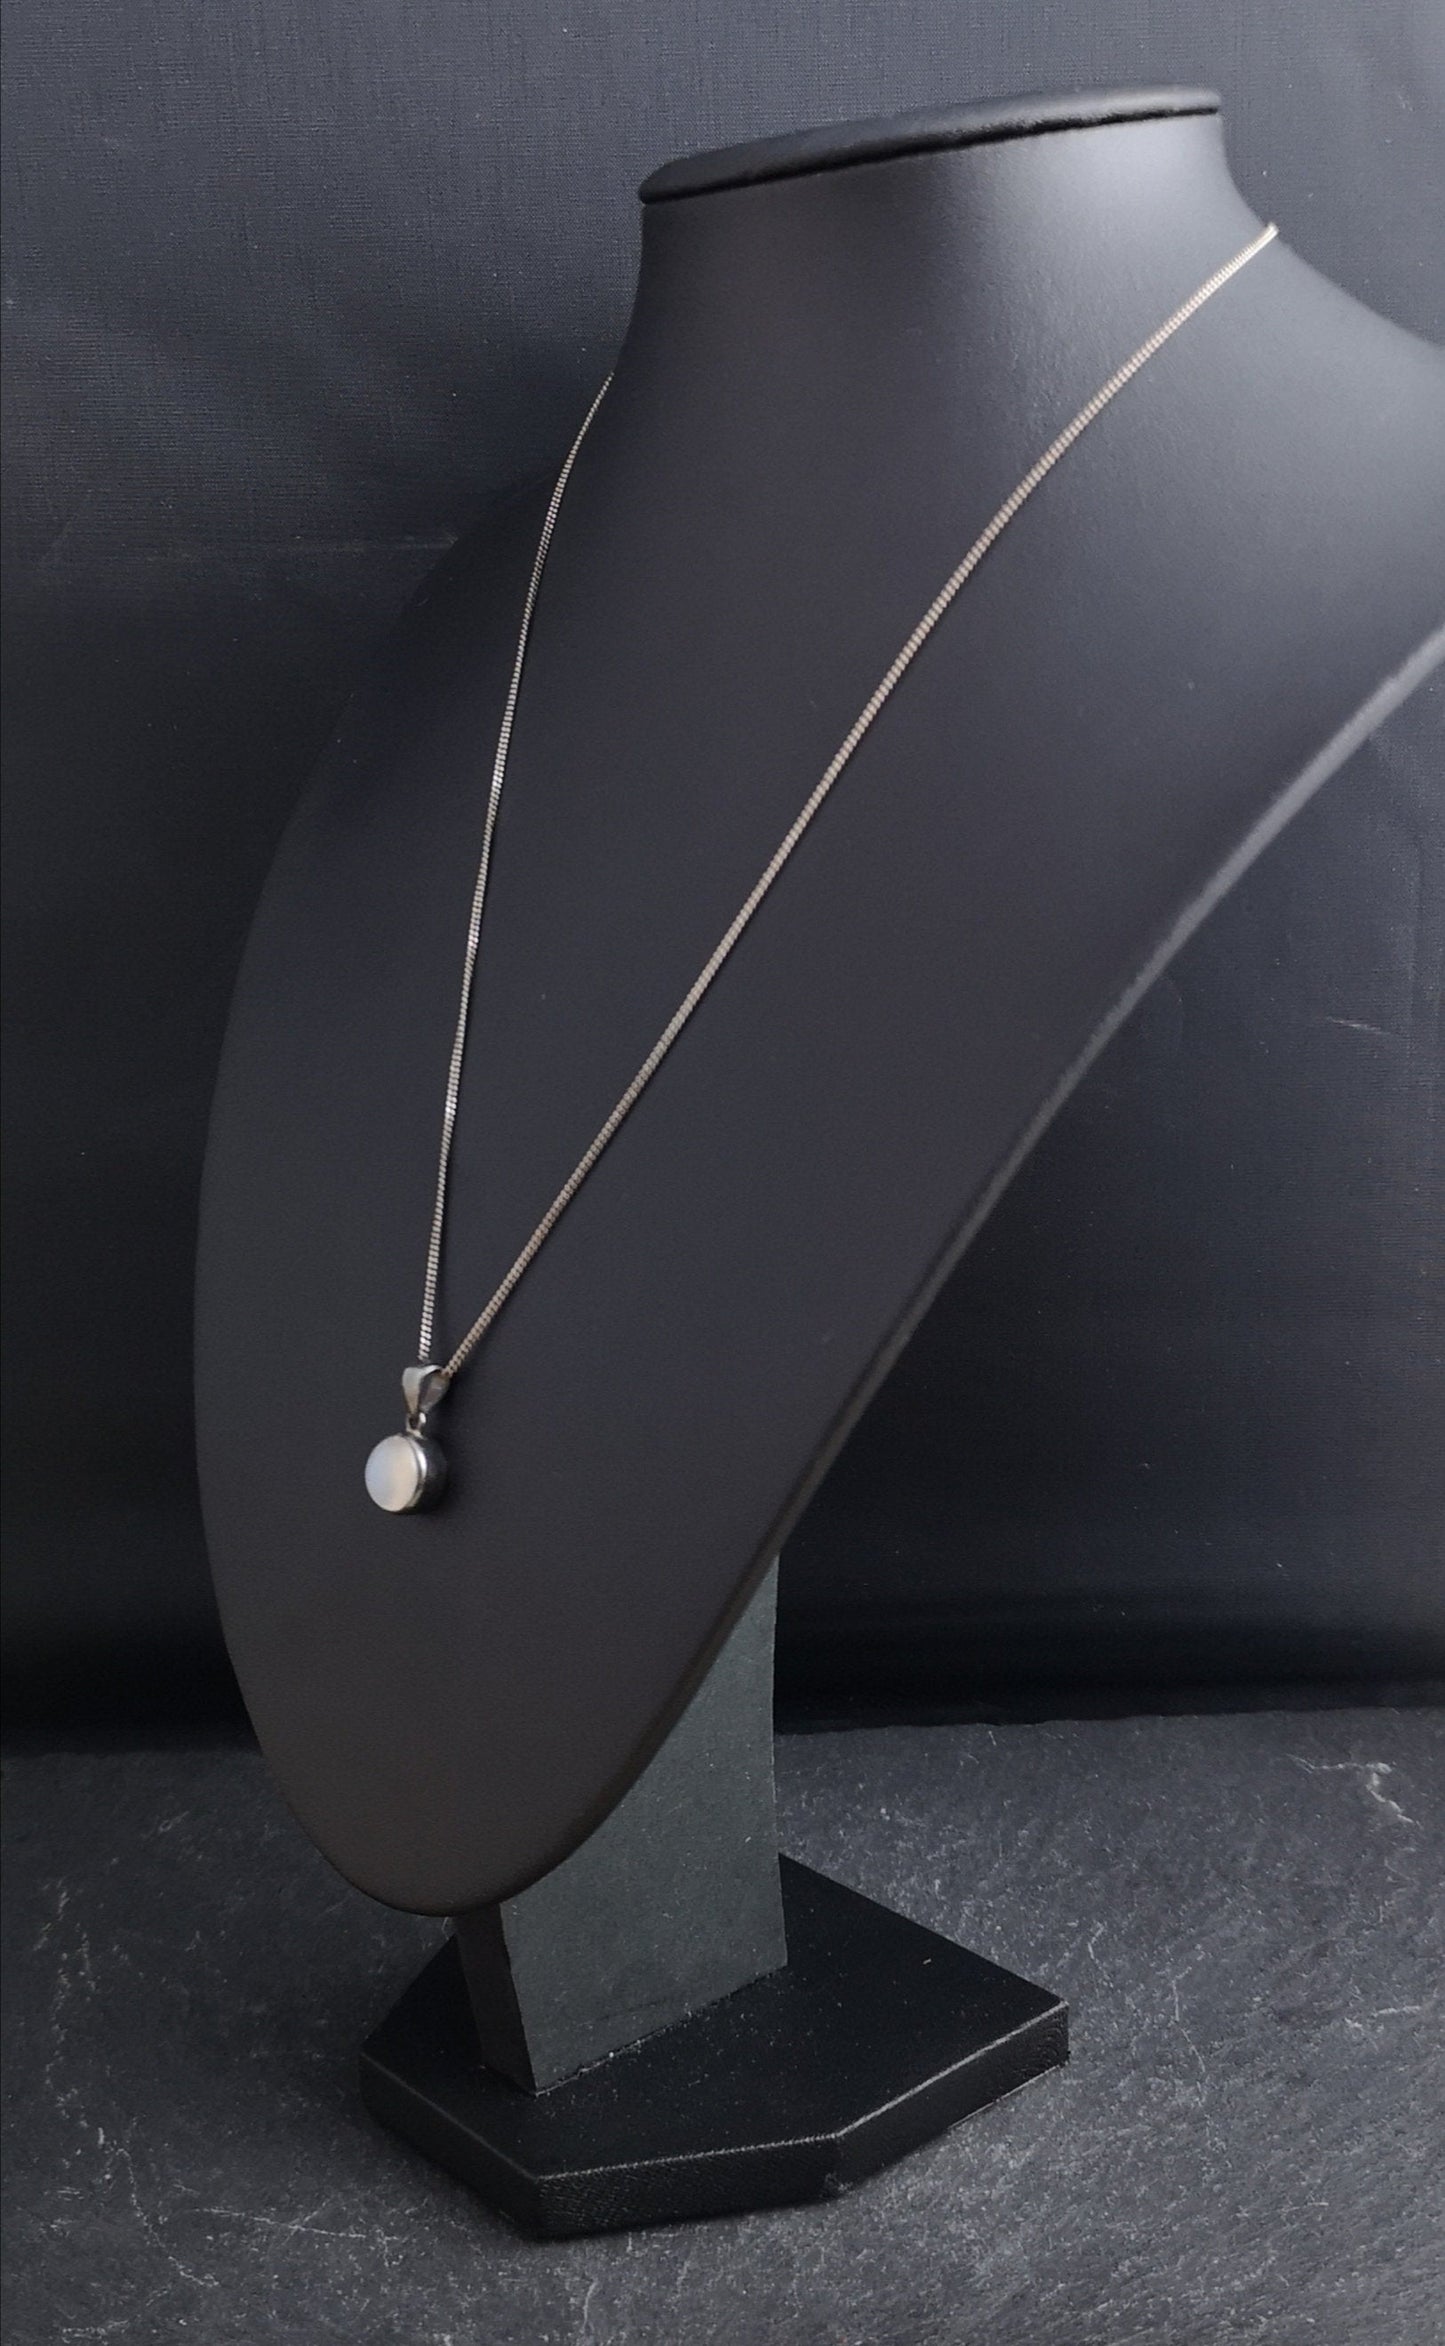 Antique silver moonstone pendant, Art Nouveau necklace